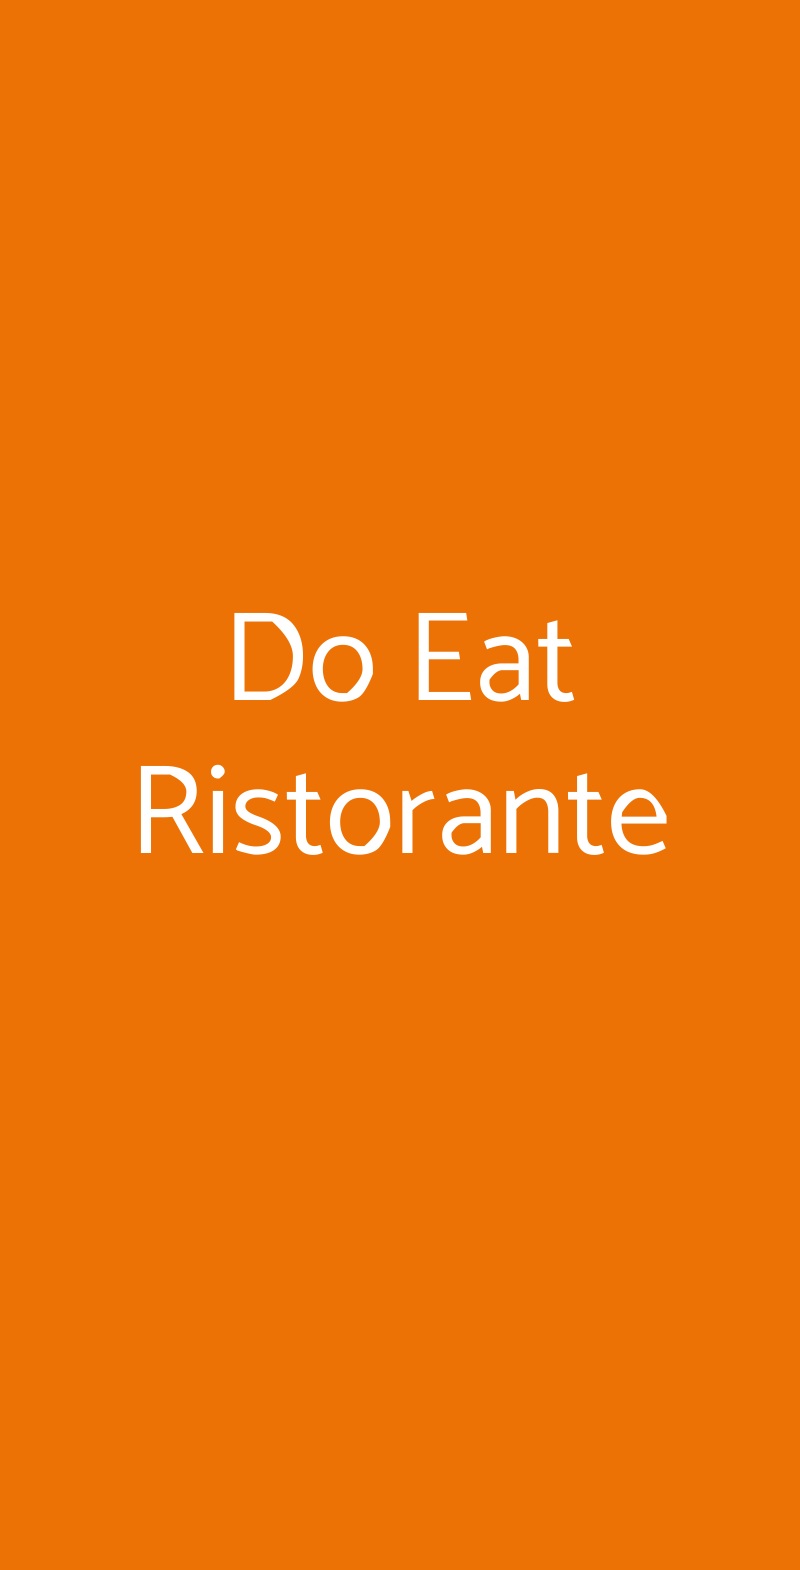 Do Eat Ristorante Milano menù 1 pagina